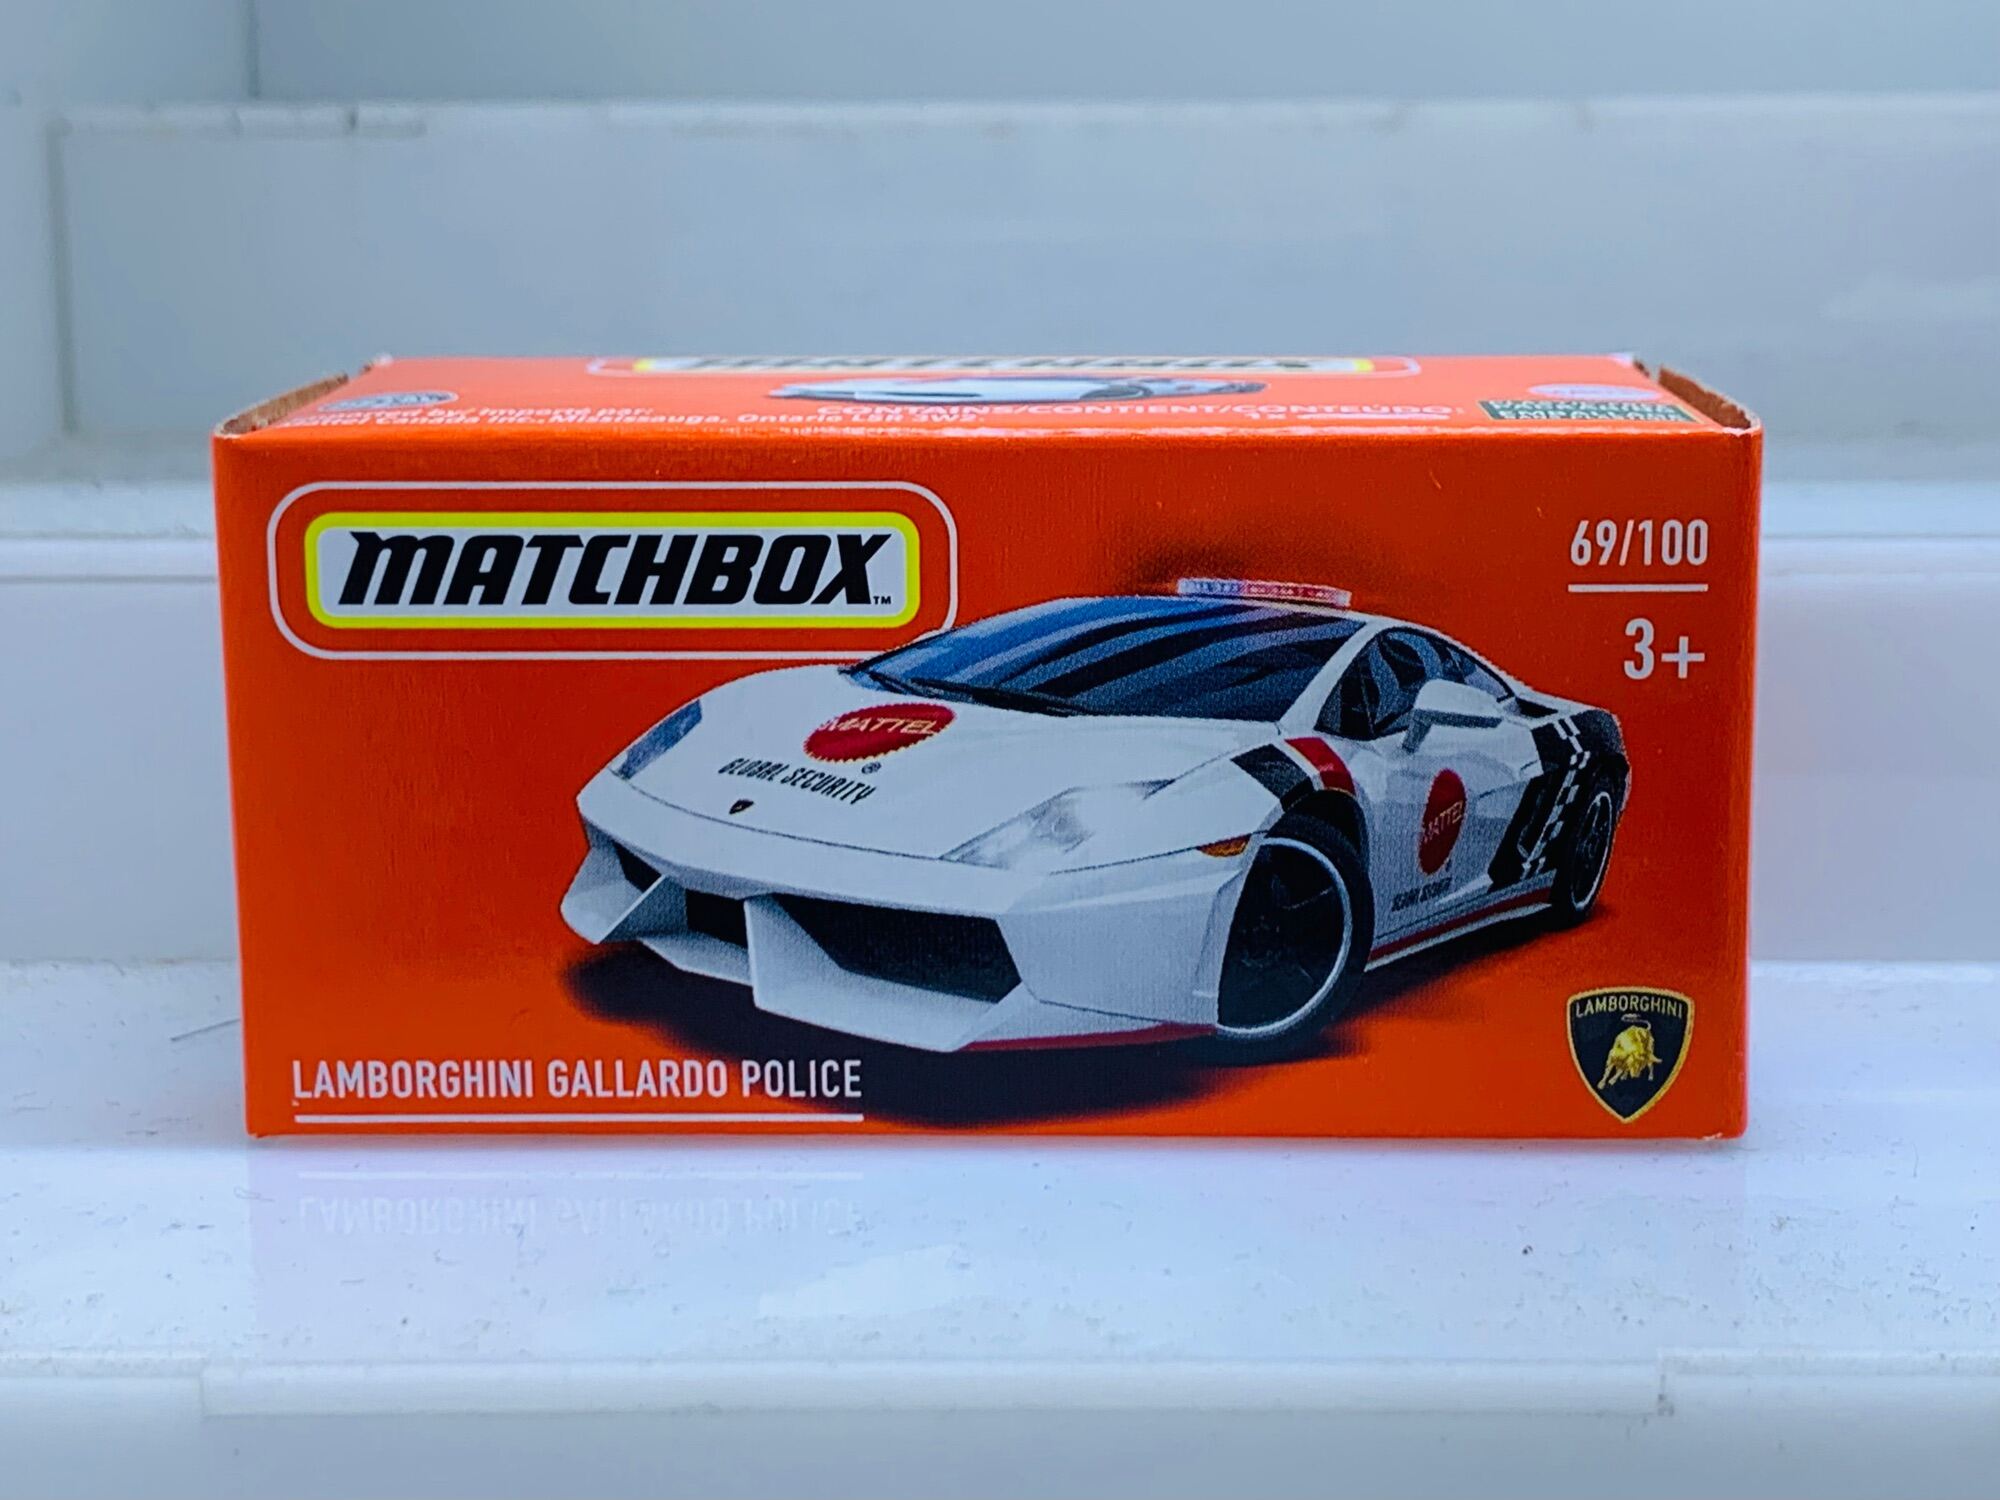 Hobby Store xe mô hình MatchBox Lamborghini Gallardo Police thumbnail